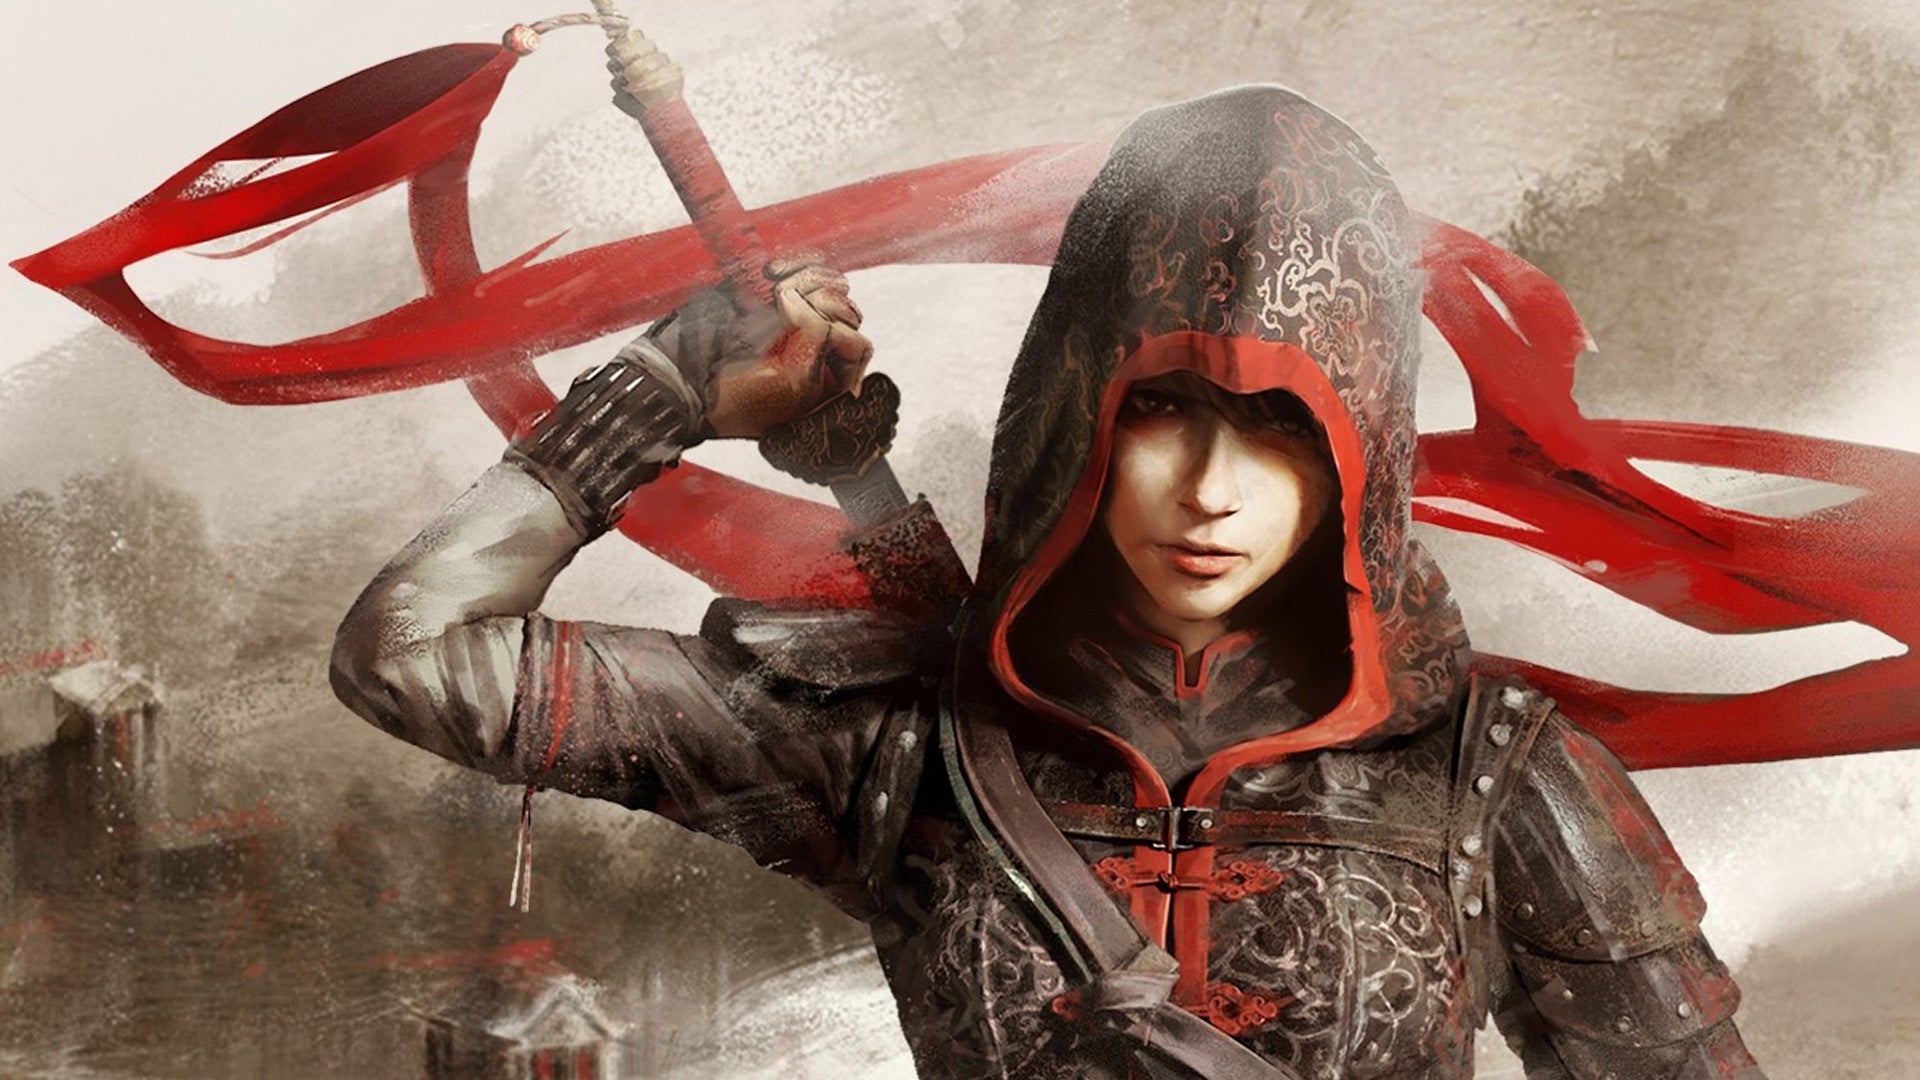 Obrazki dla Wyciekło Assassin's Creed Red. Akcja osadzona najpewniej w Japonii